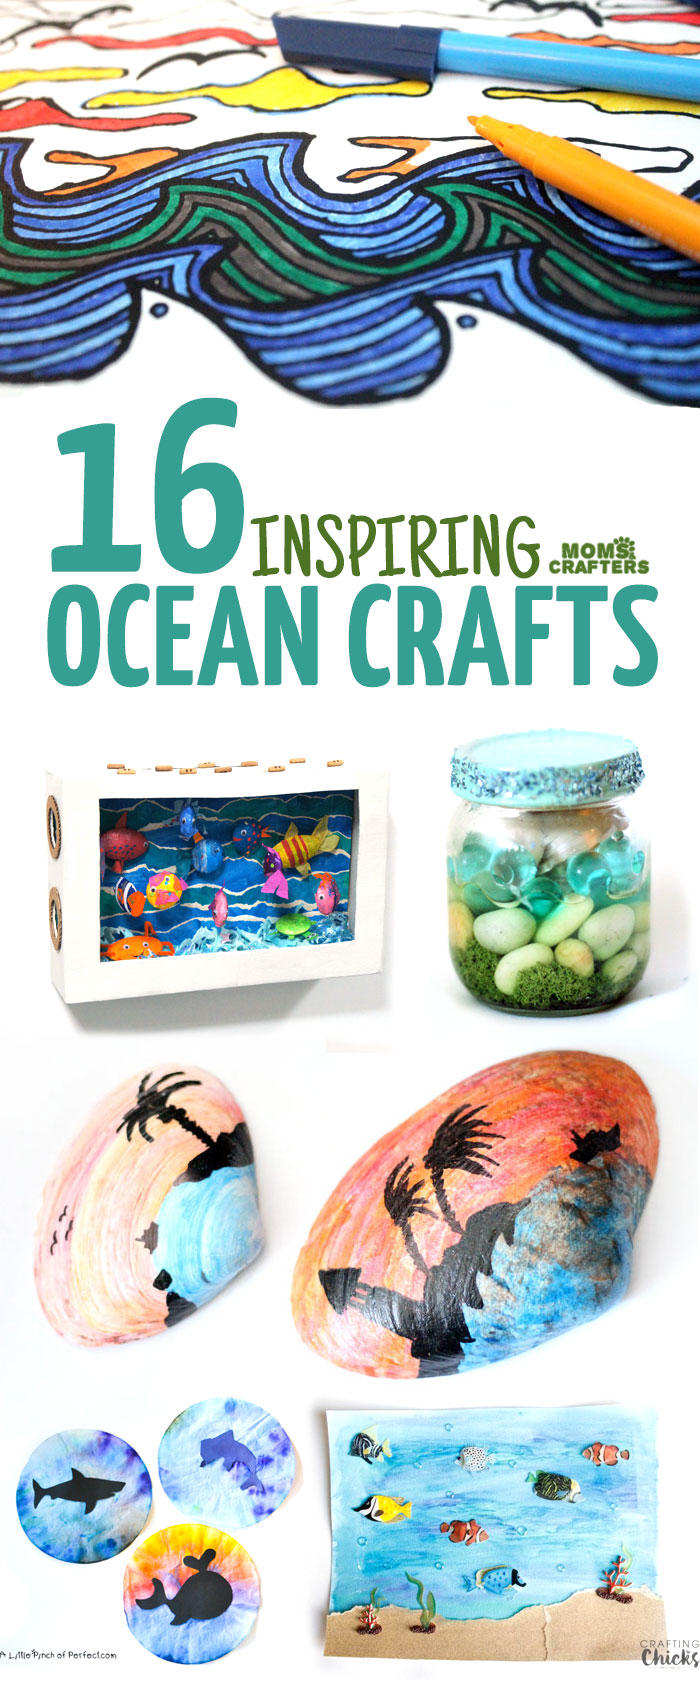 https://www.momsandcrafters.com/wp-content/uploads/2016/07/ocean-crafts-c.jpg.webp